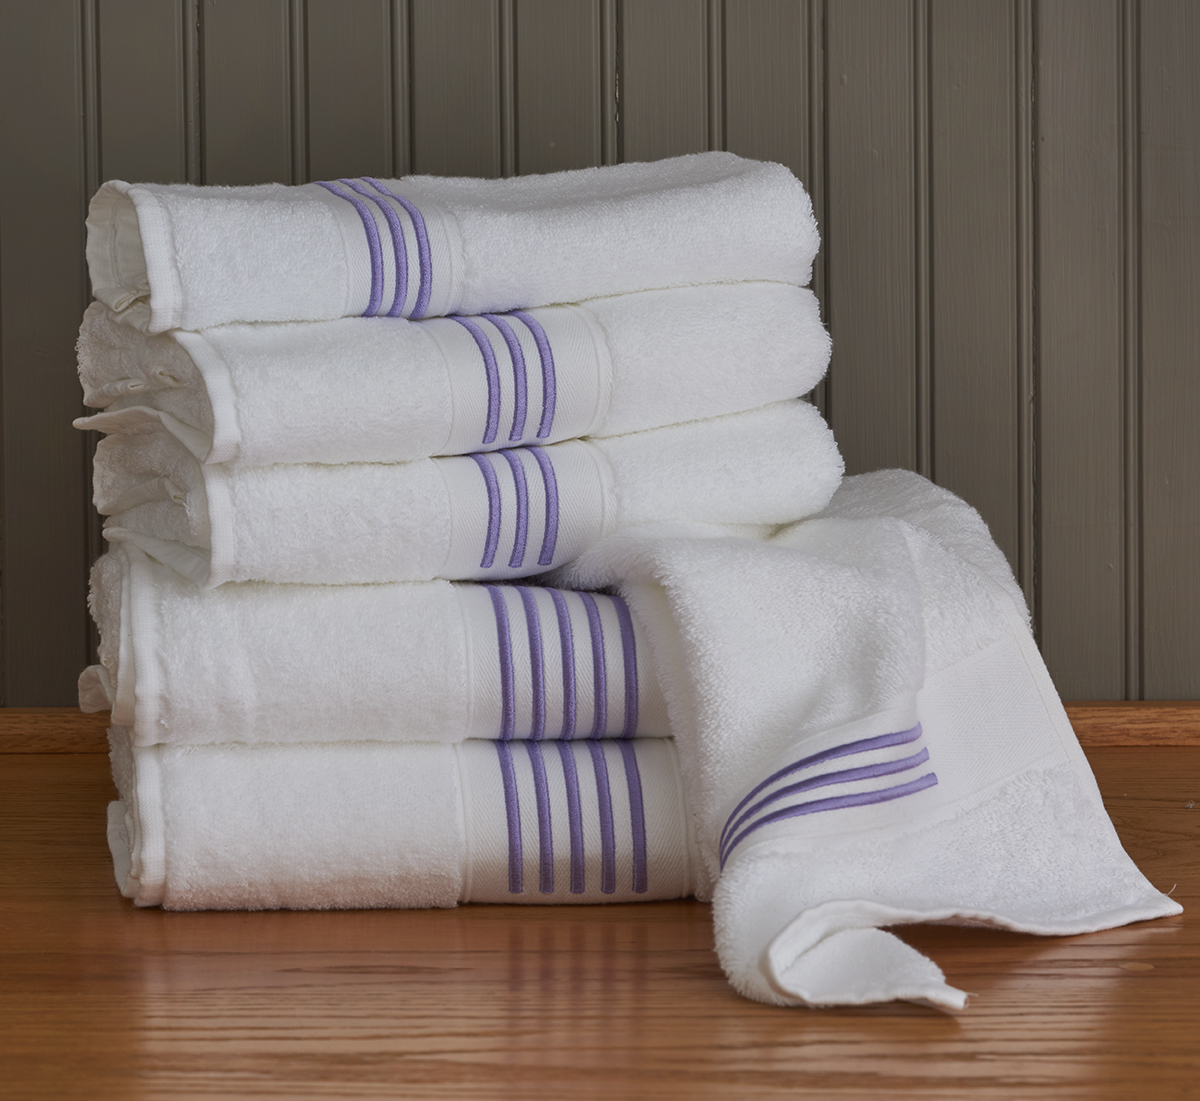 Matilda Towels